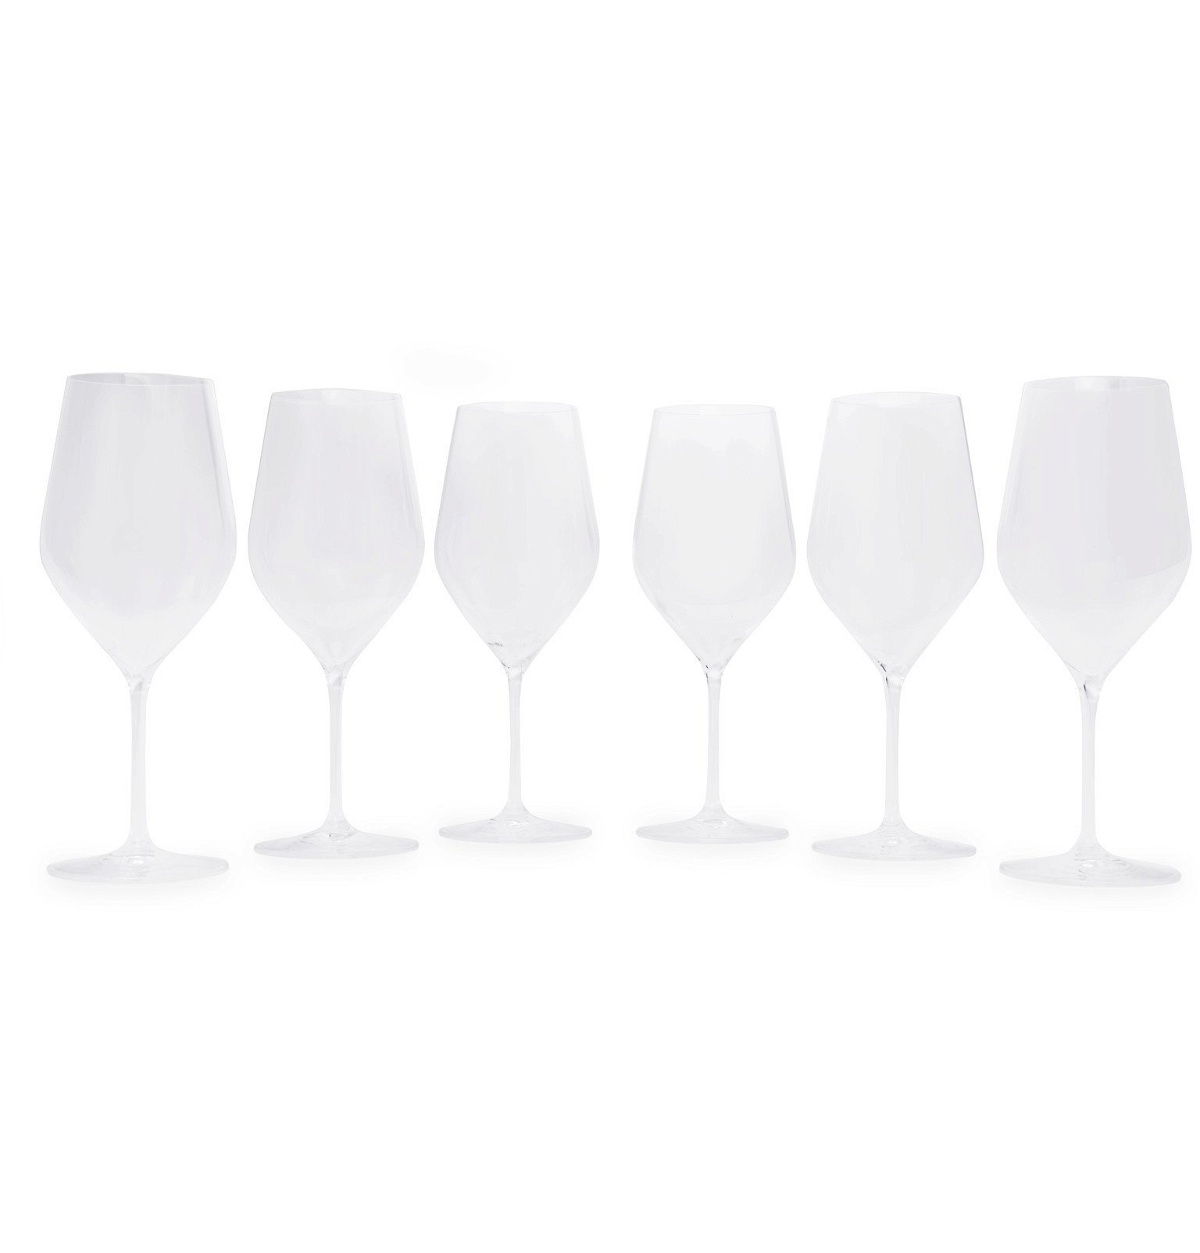 L' Atelier Du Vin Champagne Flutes (Set Of 2) - Buy Now